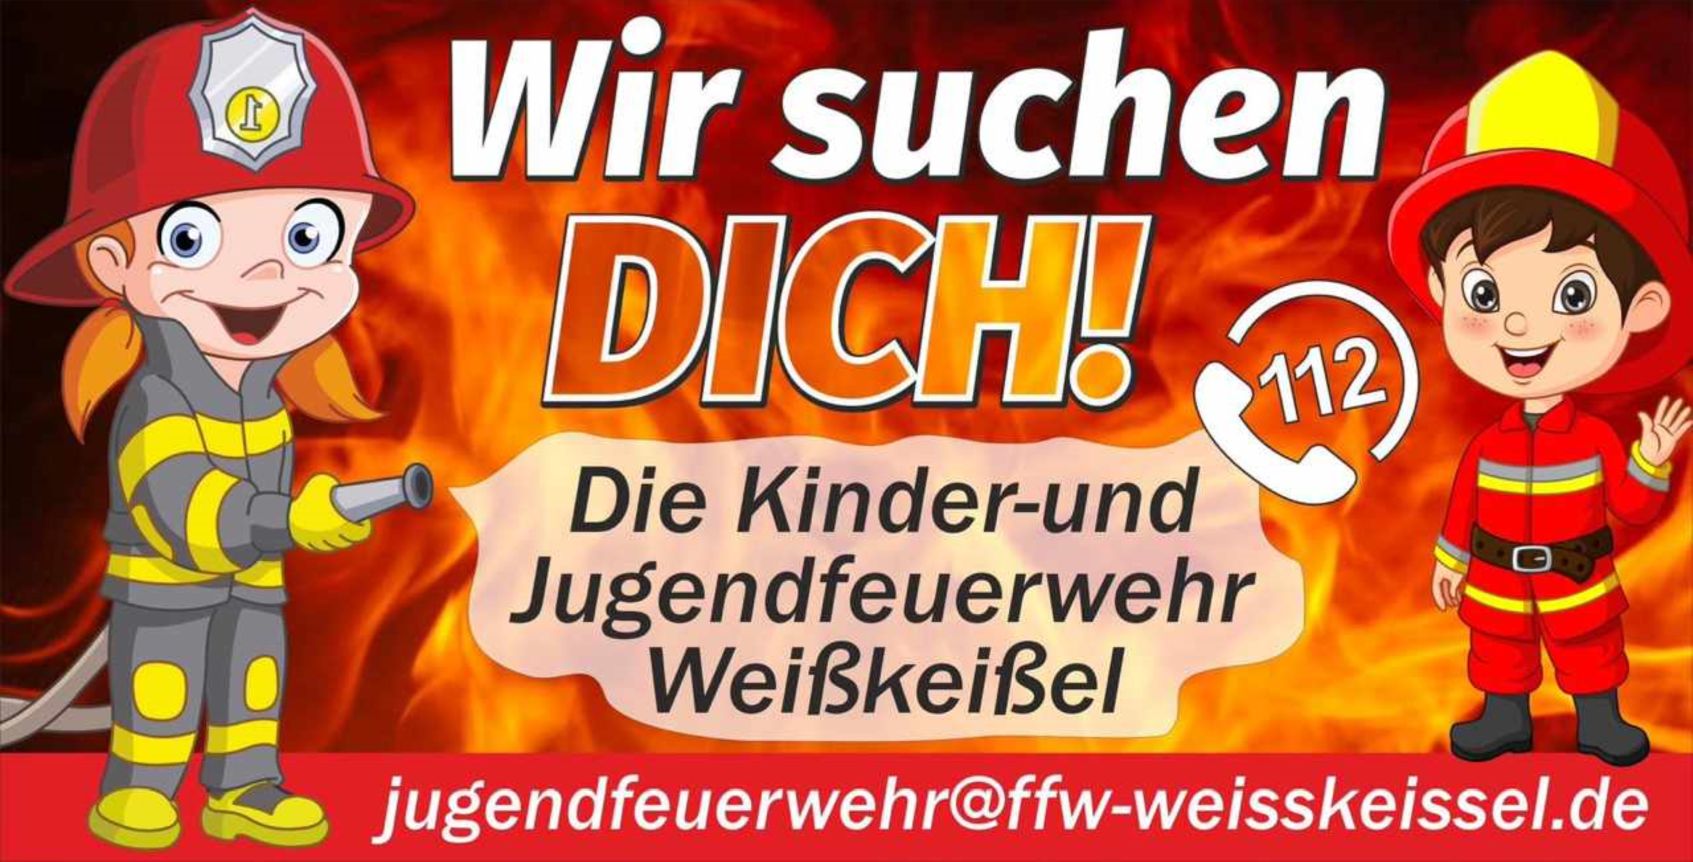 Wir suchen DICH! Die Kinder- und Jugendfeuerwehr Weikeiel. jugendfeuerwehr@ffw-weisskeissel.de